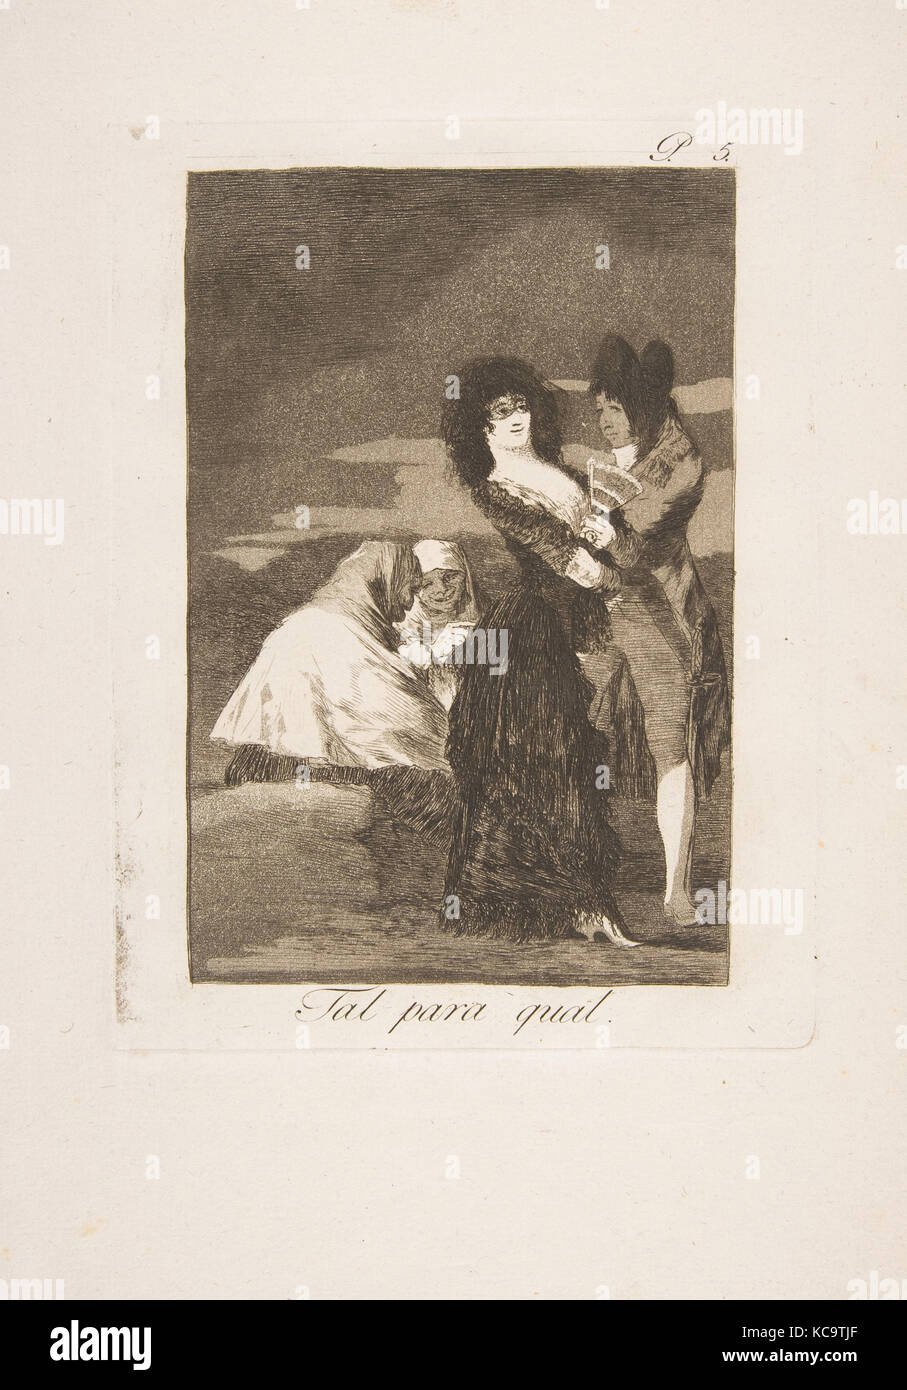 Placa 5 de 'Los Caprichos': dos de una clase (Tal qual Pará), Goya, 1799 Foto de stock